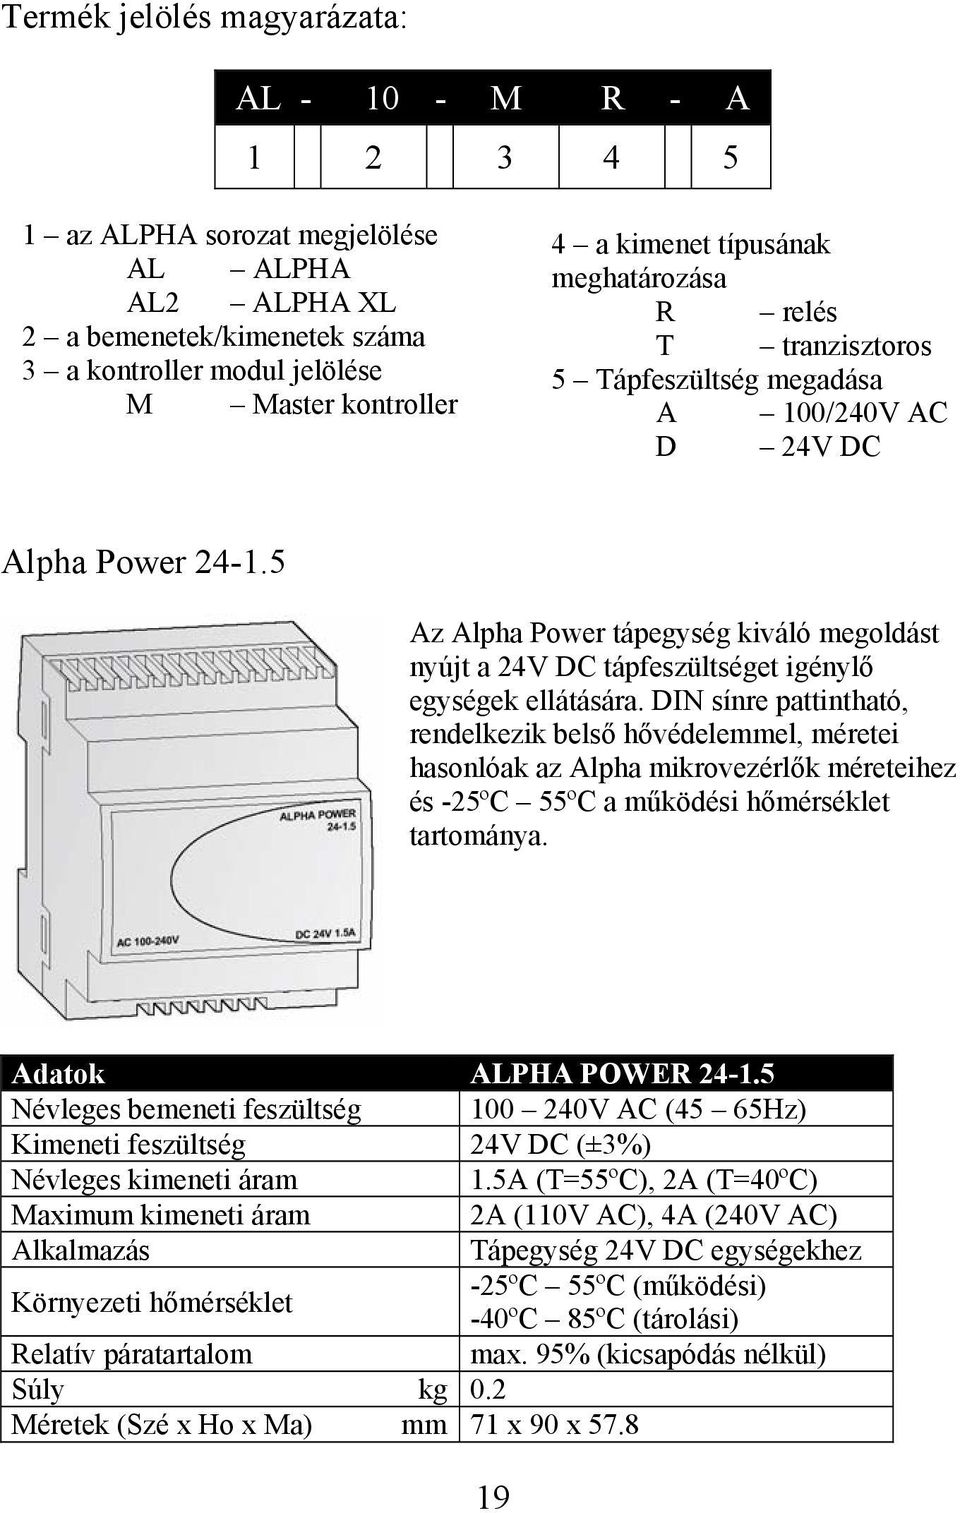 5 Az Alpha Power tápegység kiváló megoldást nyújt a 24V DC tápfeszültséget igénylő egységek ellátására.